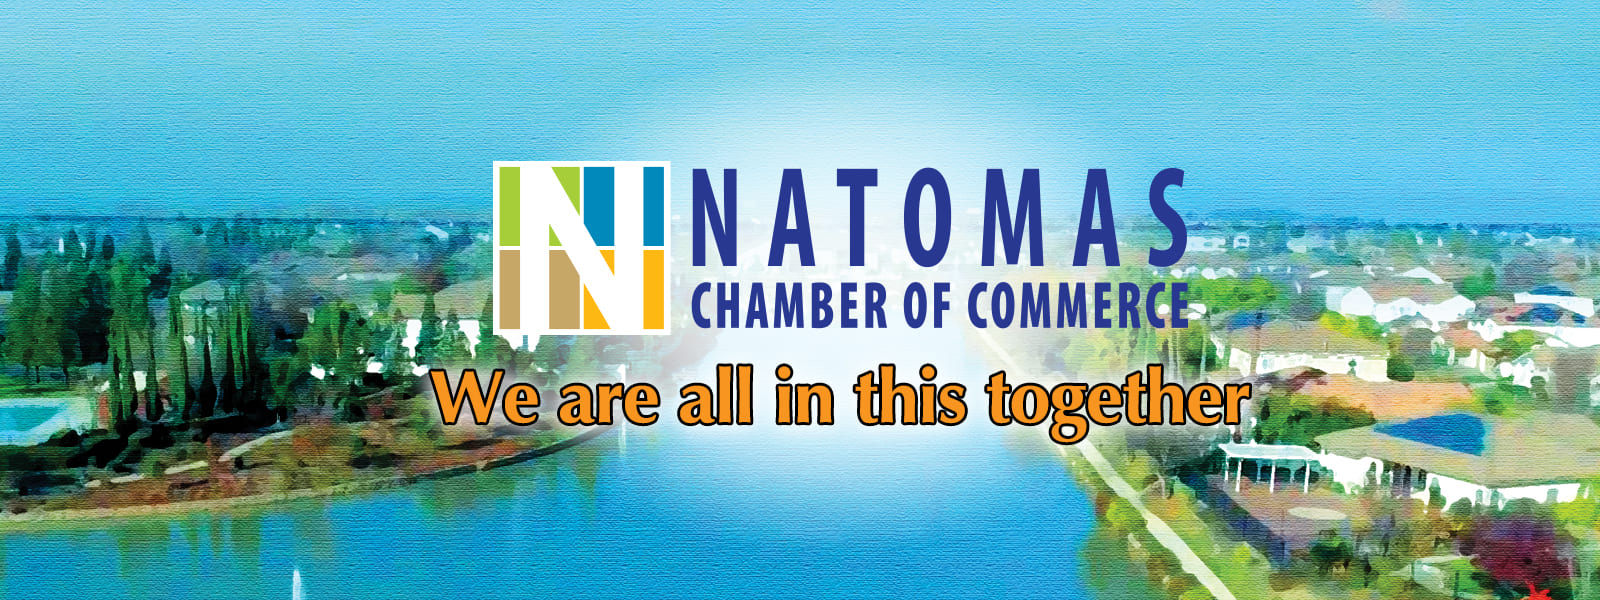 natomas chamber of commerce sponsorships1